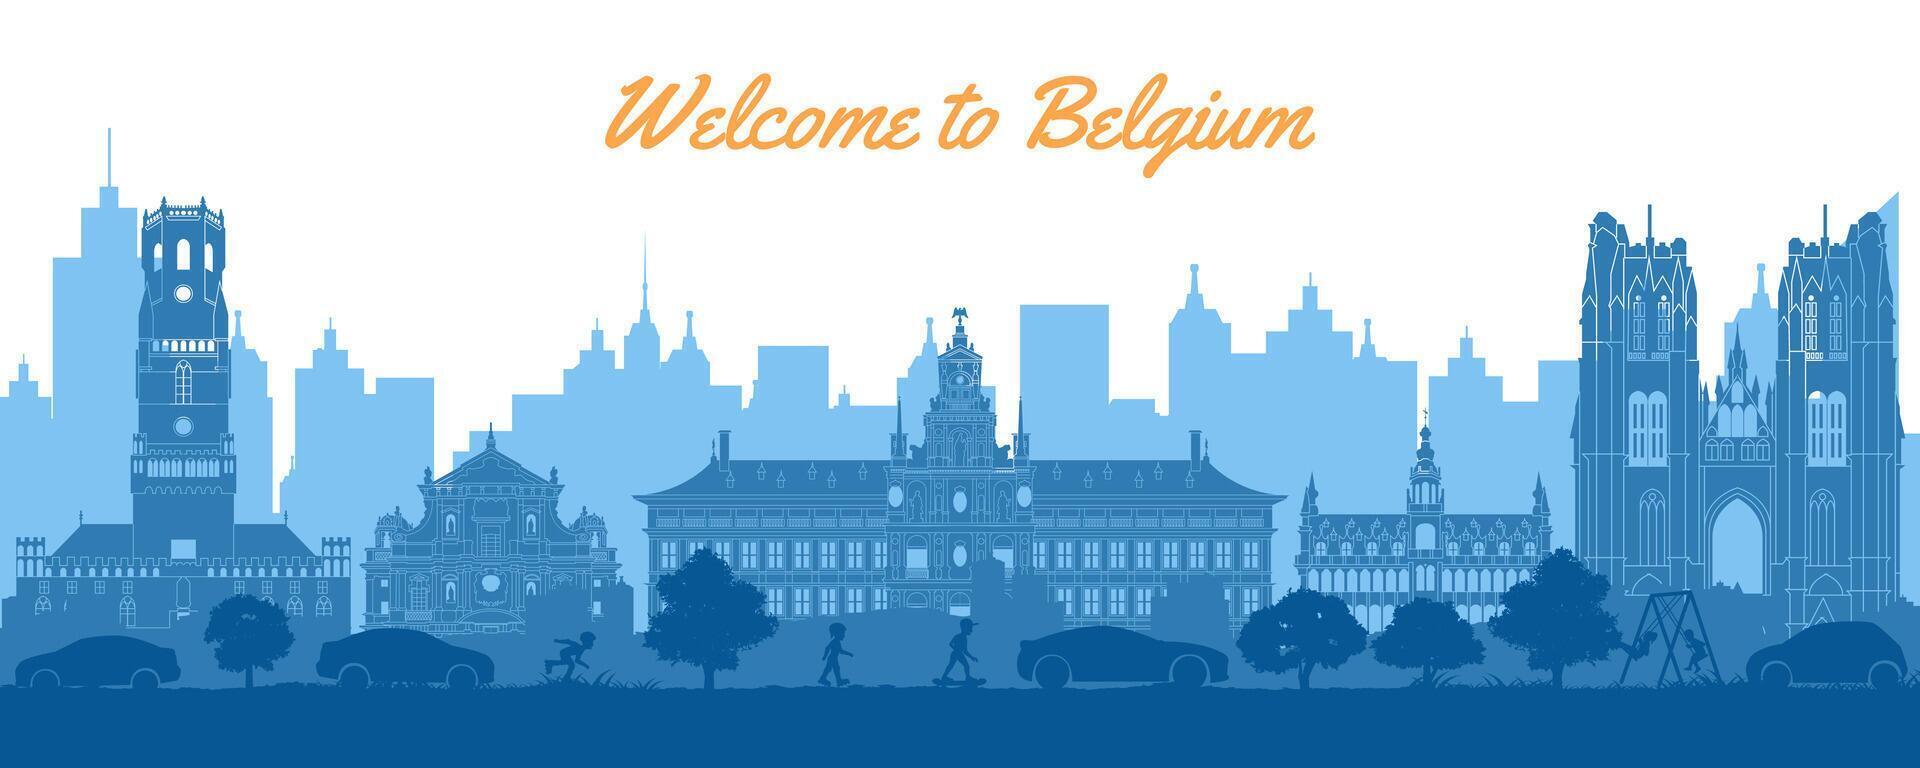 Belgien berühmt Sehenswürdigkeiten im Situation von Innenstadt durch Silhouette Stil vektor